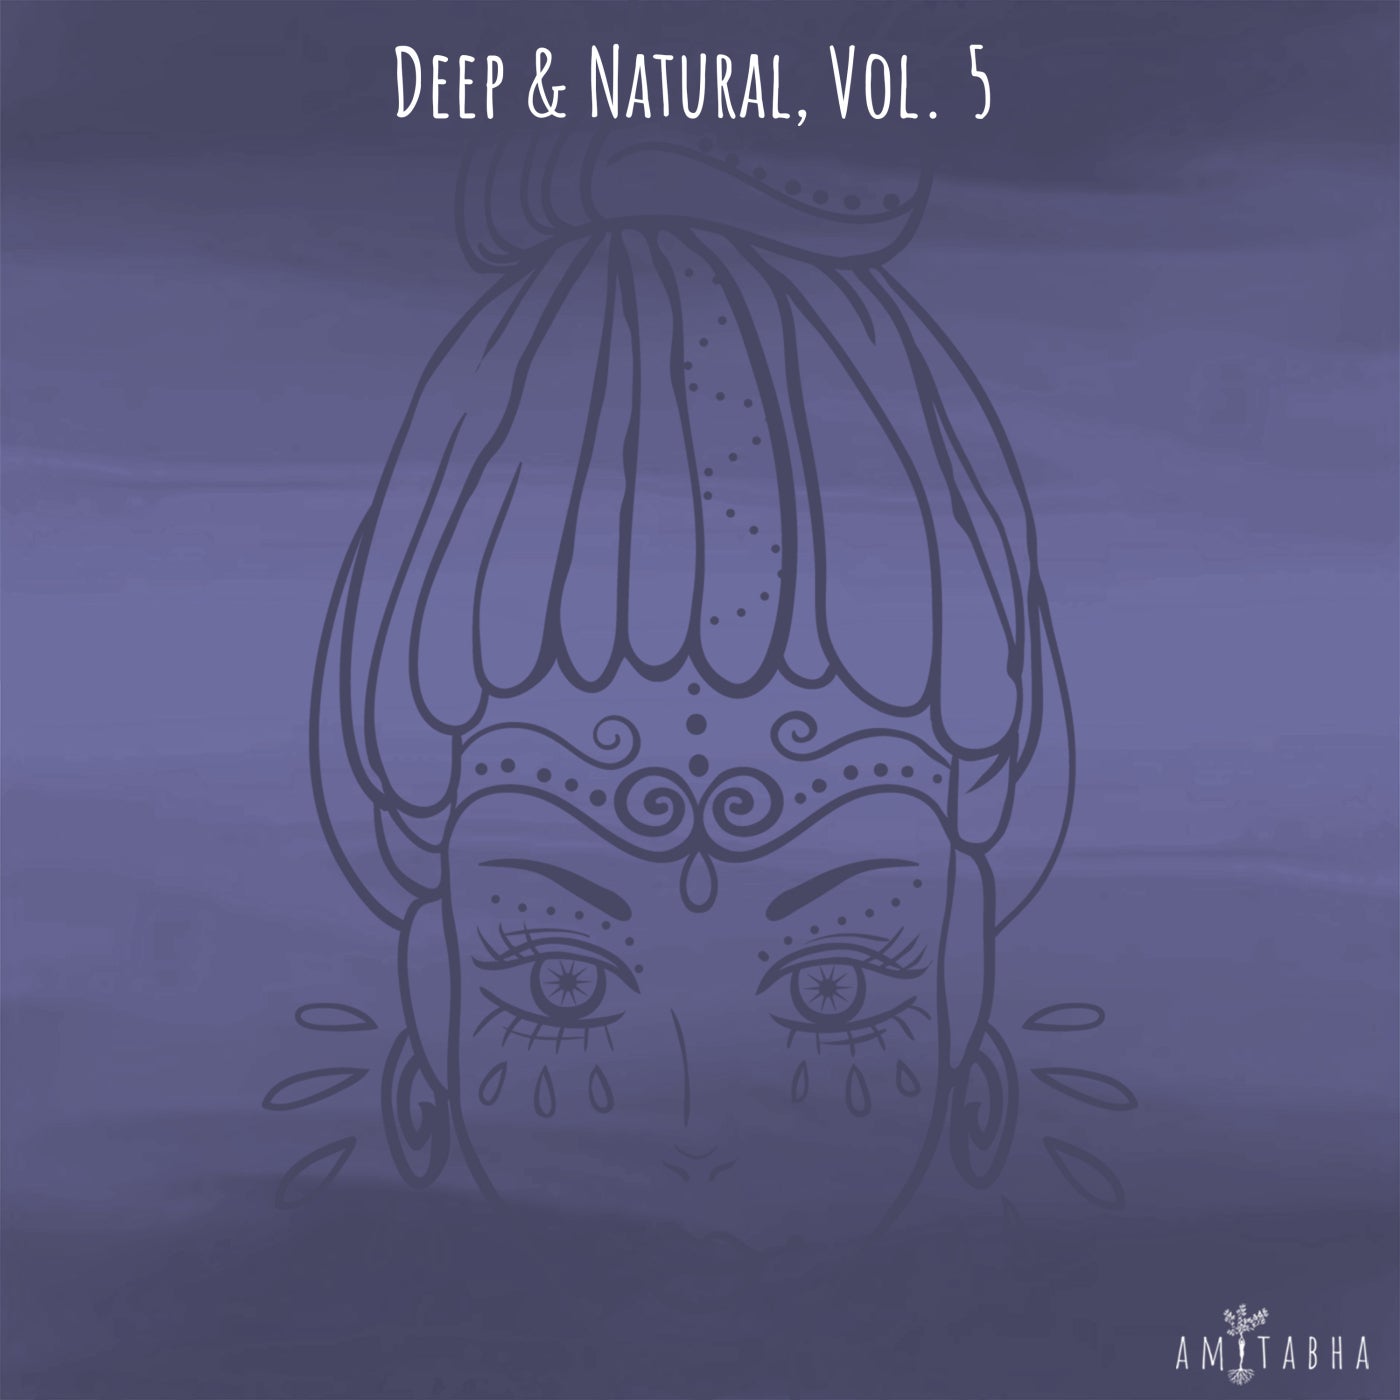 VA - Deep & Natural, Vol. 5 [AMIT033]